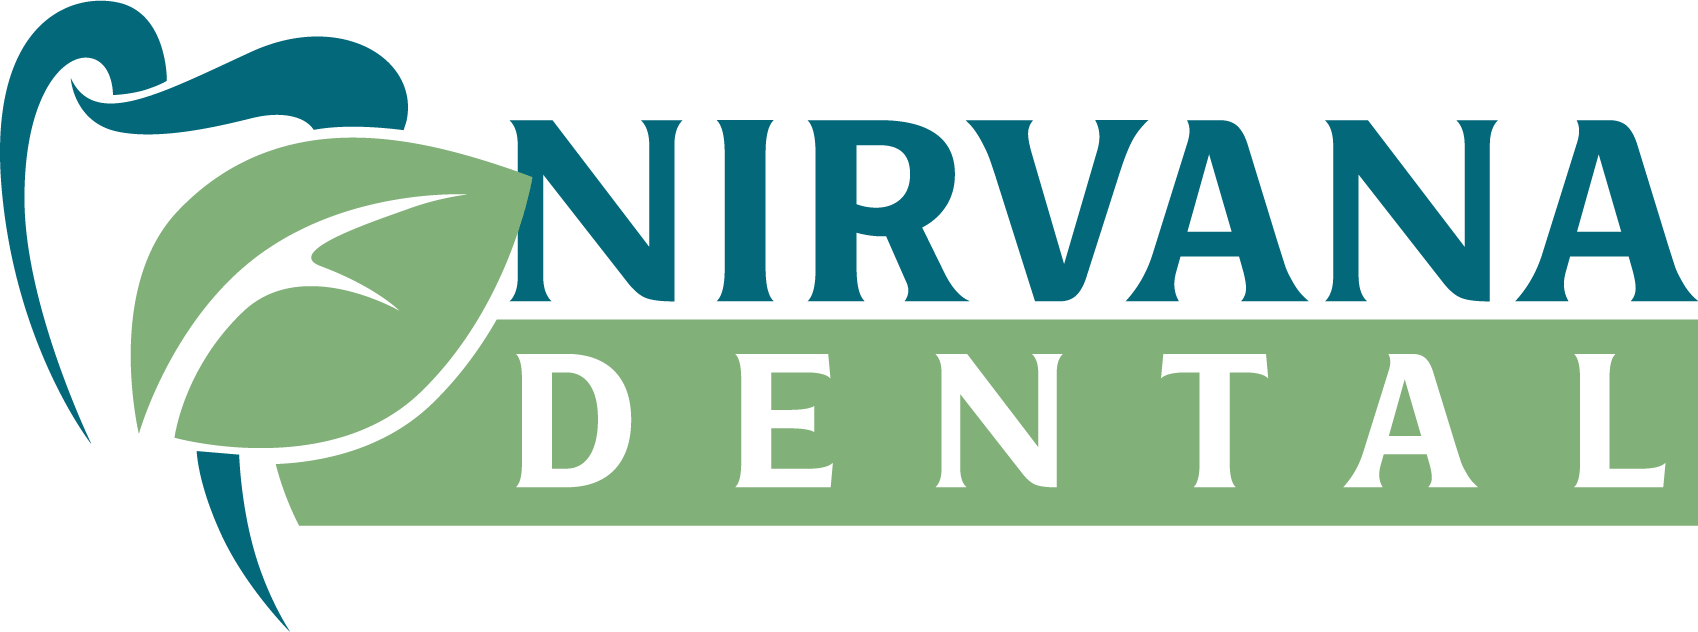 Nirvana Dental